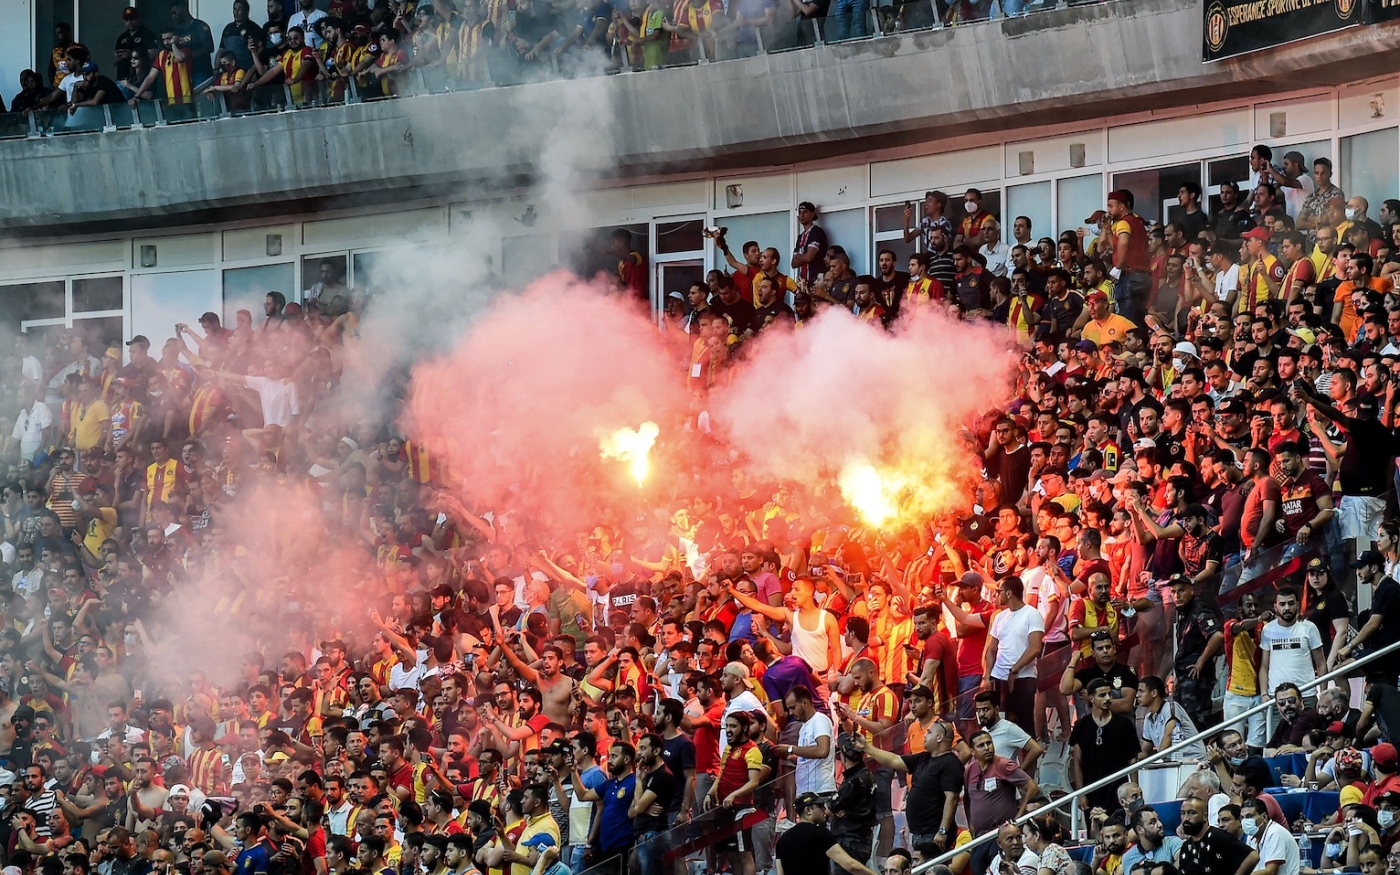 Les images des supporteurs de l’Espérance sportive de Tunis lors du match contre les Égyptiens d’Al Ahly le 19 juin 2021 ont suscité de vives réactions sur les réseaux sociaux (AFP/Fethi Belaid)